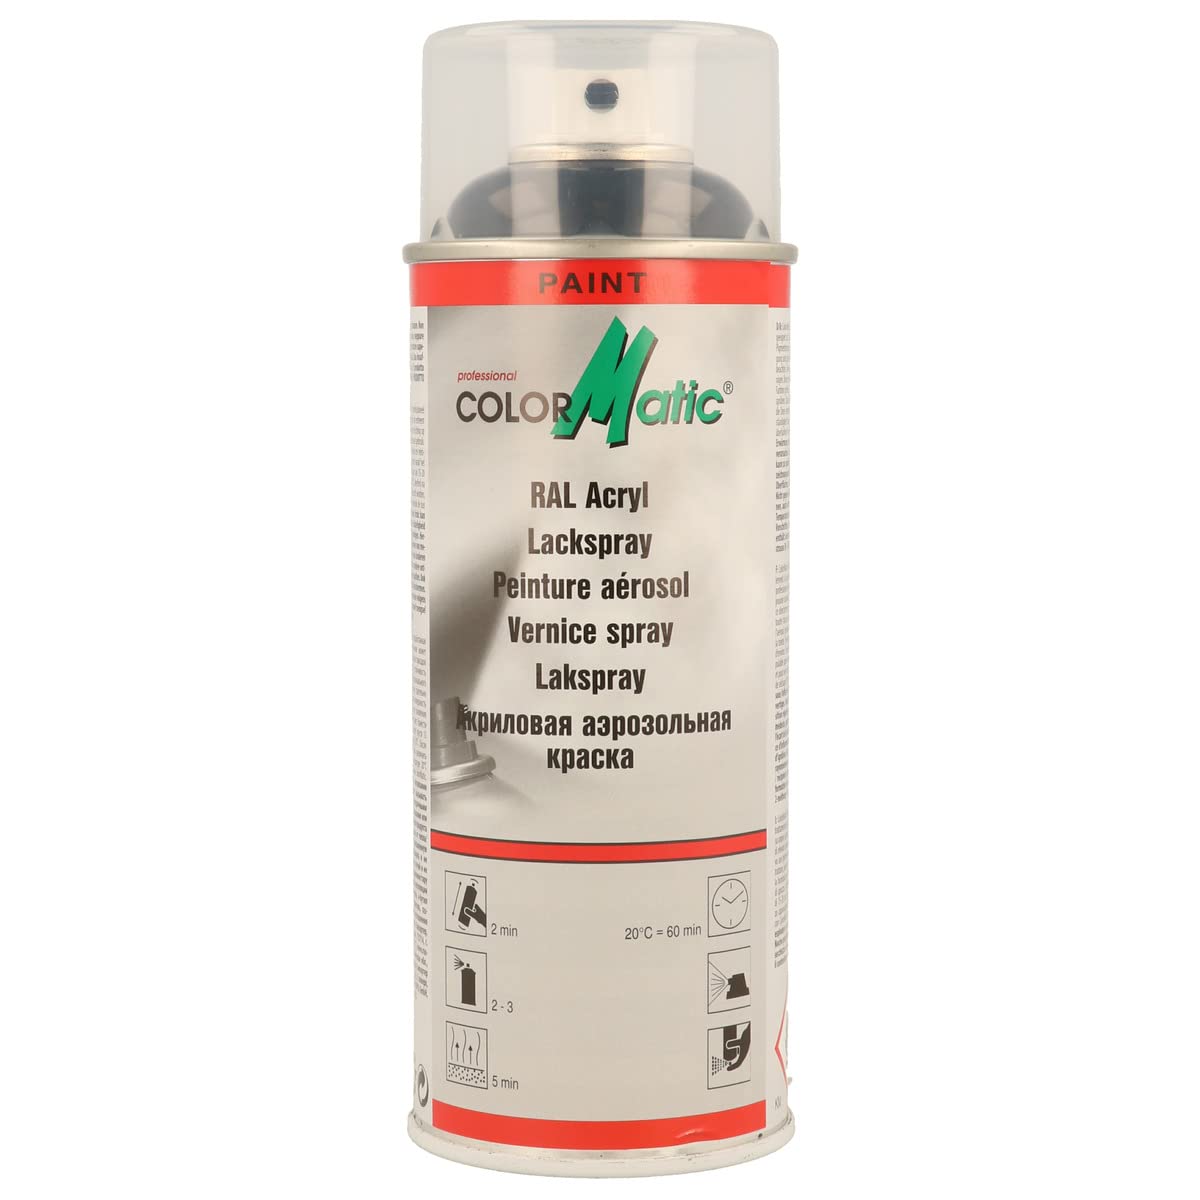 ColorMatic 856631 RAL-Acryl Lackspray RAL 9005 tiefschwarz glänzend 400 ml von COLORMATIC